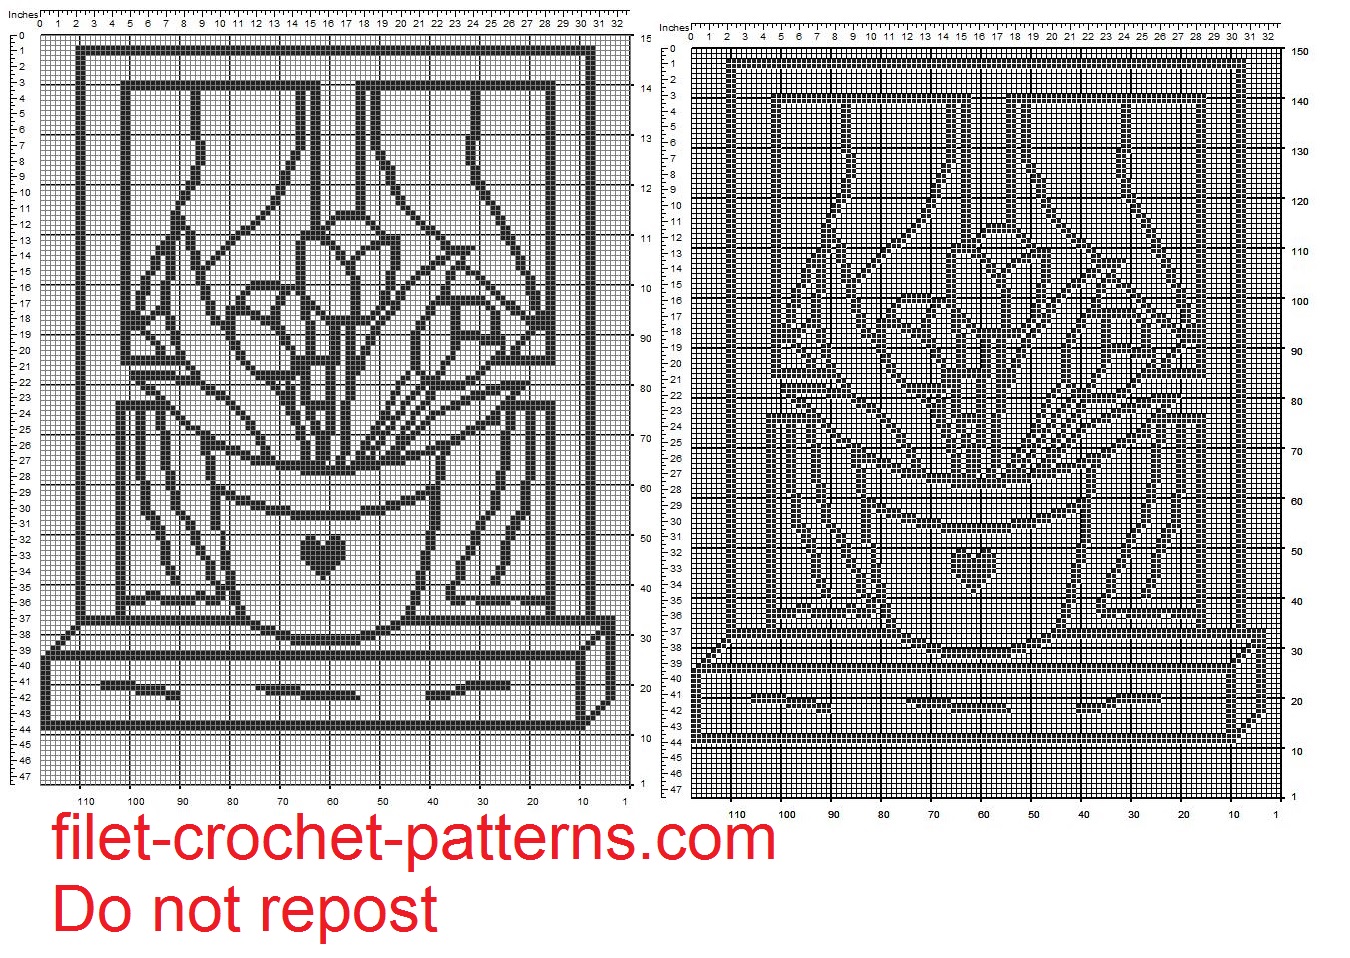 curtain filet crochet pattern vase of tulips on window